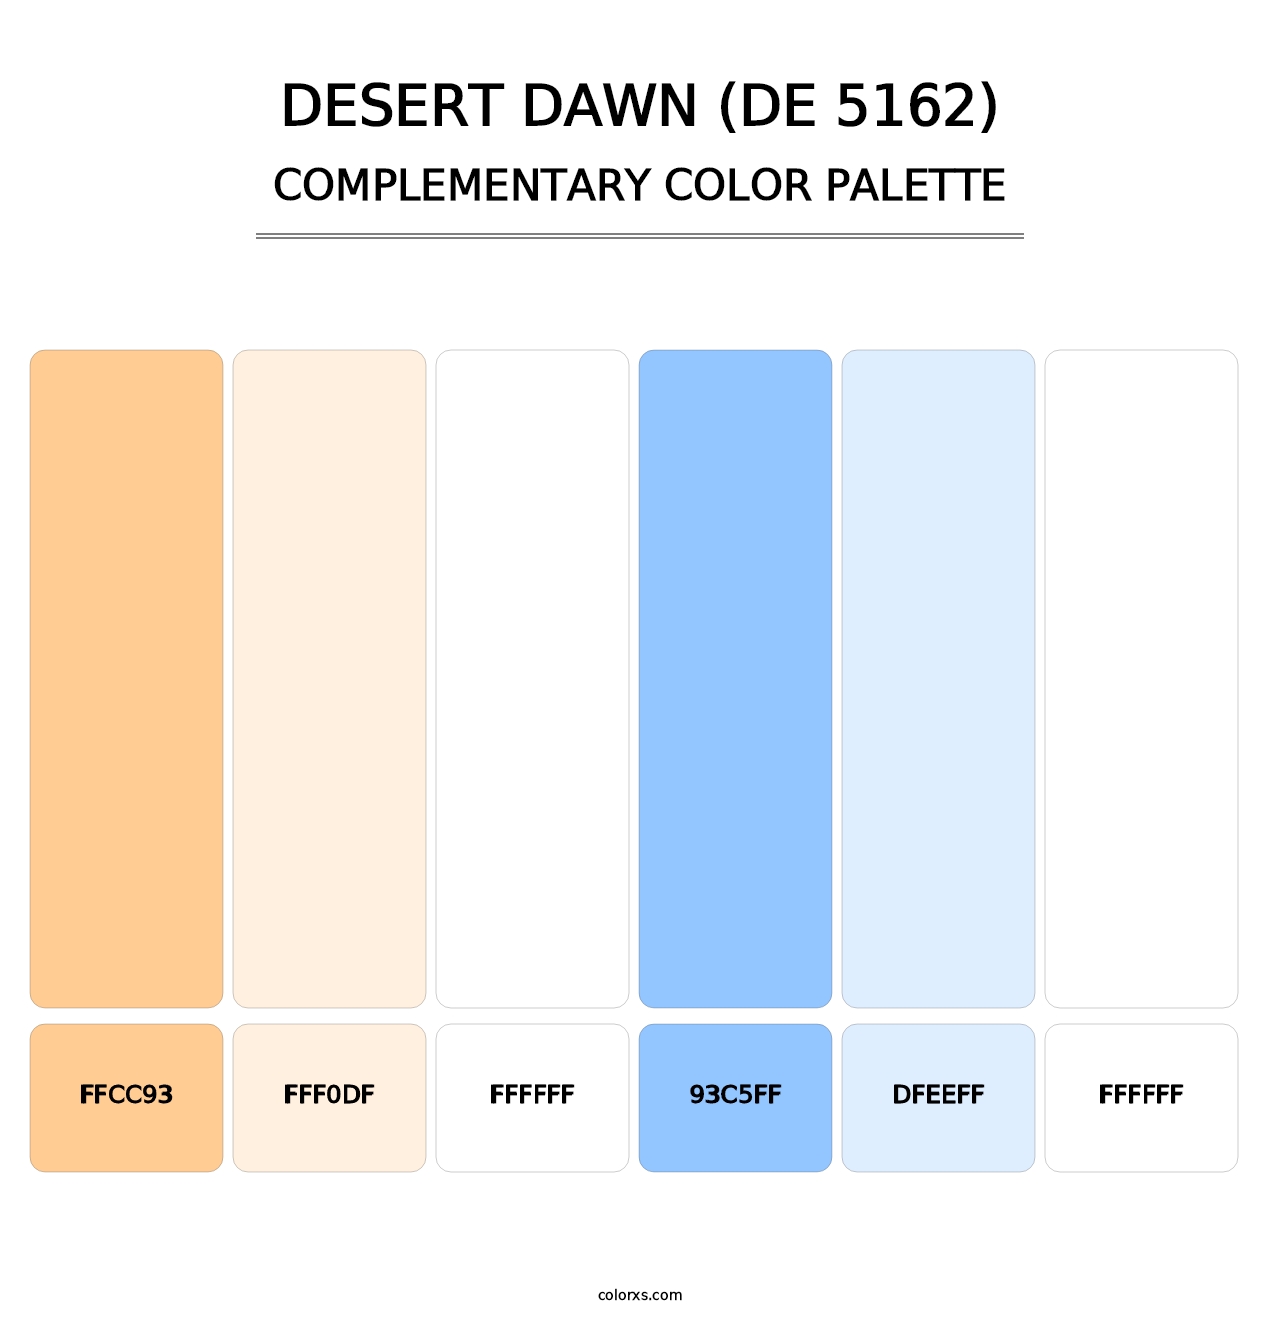 Desert Dawn (DE 5162) - Complementary Color Palette